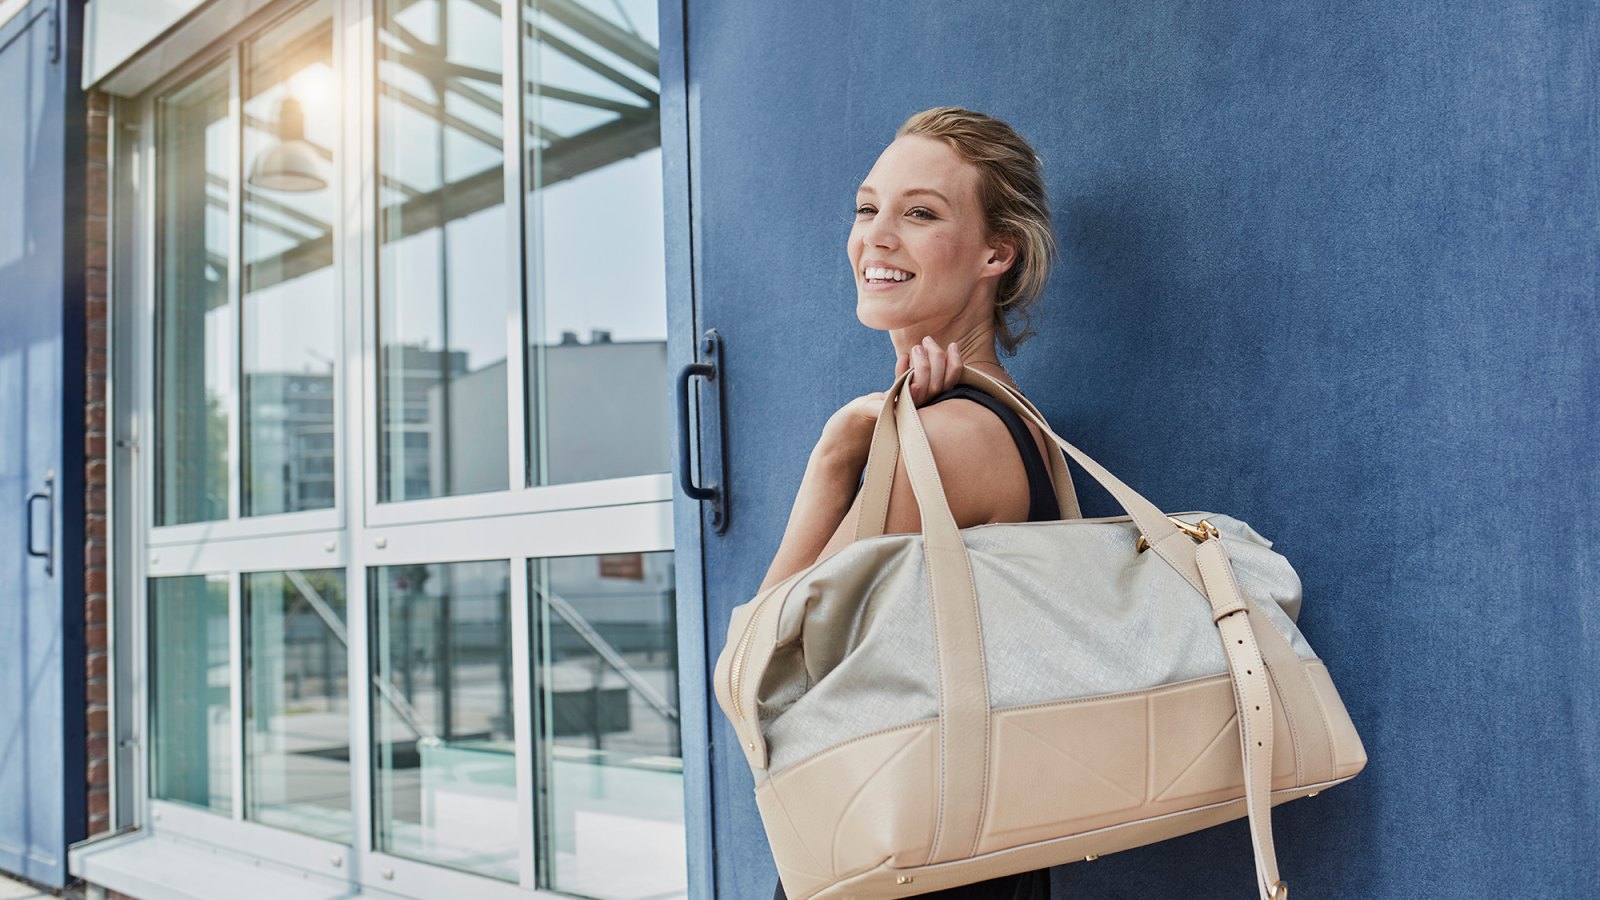 10 Designer Travel Bags That Celebrity Jetsetters Love